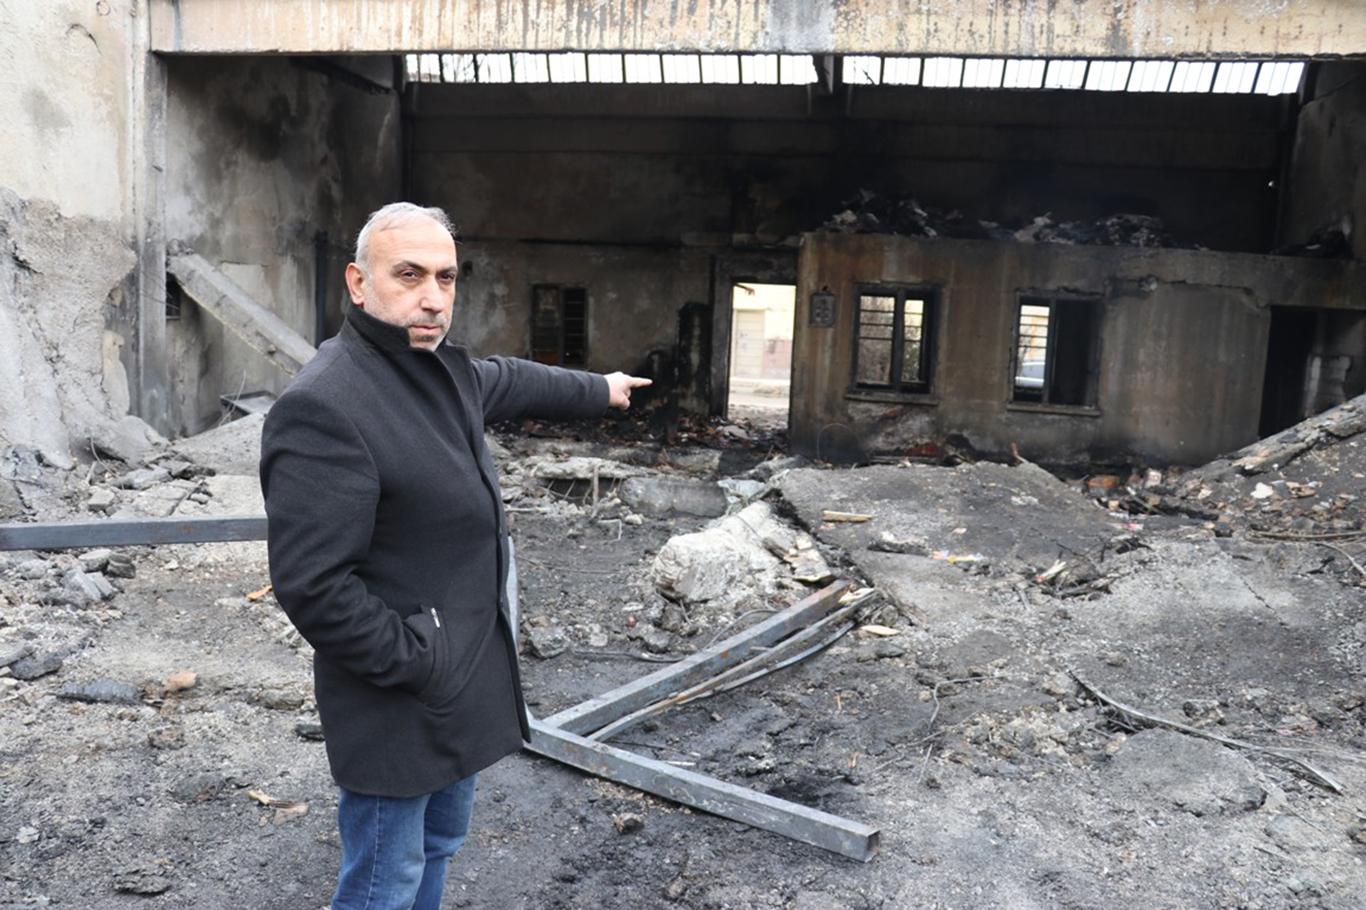 Gaziantep'teki yangında işyeri kullanılamaz hale gelen esnaf yardım bekliyor